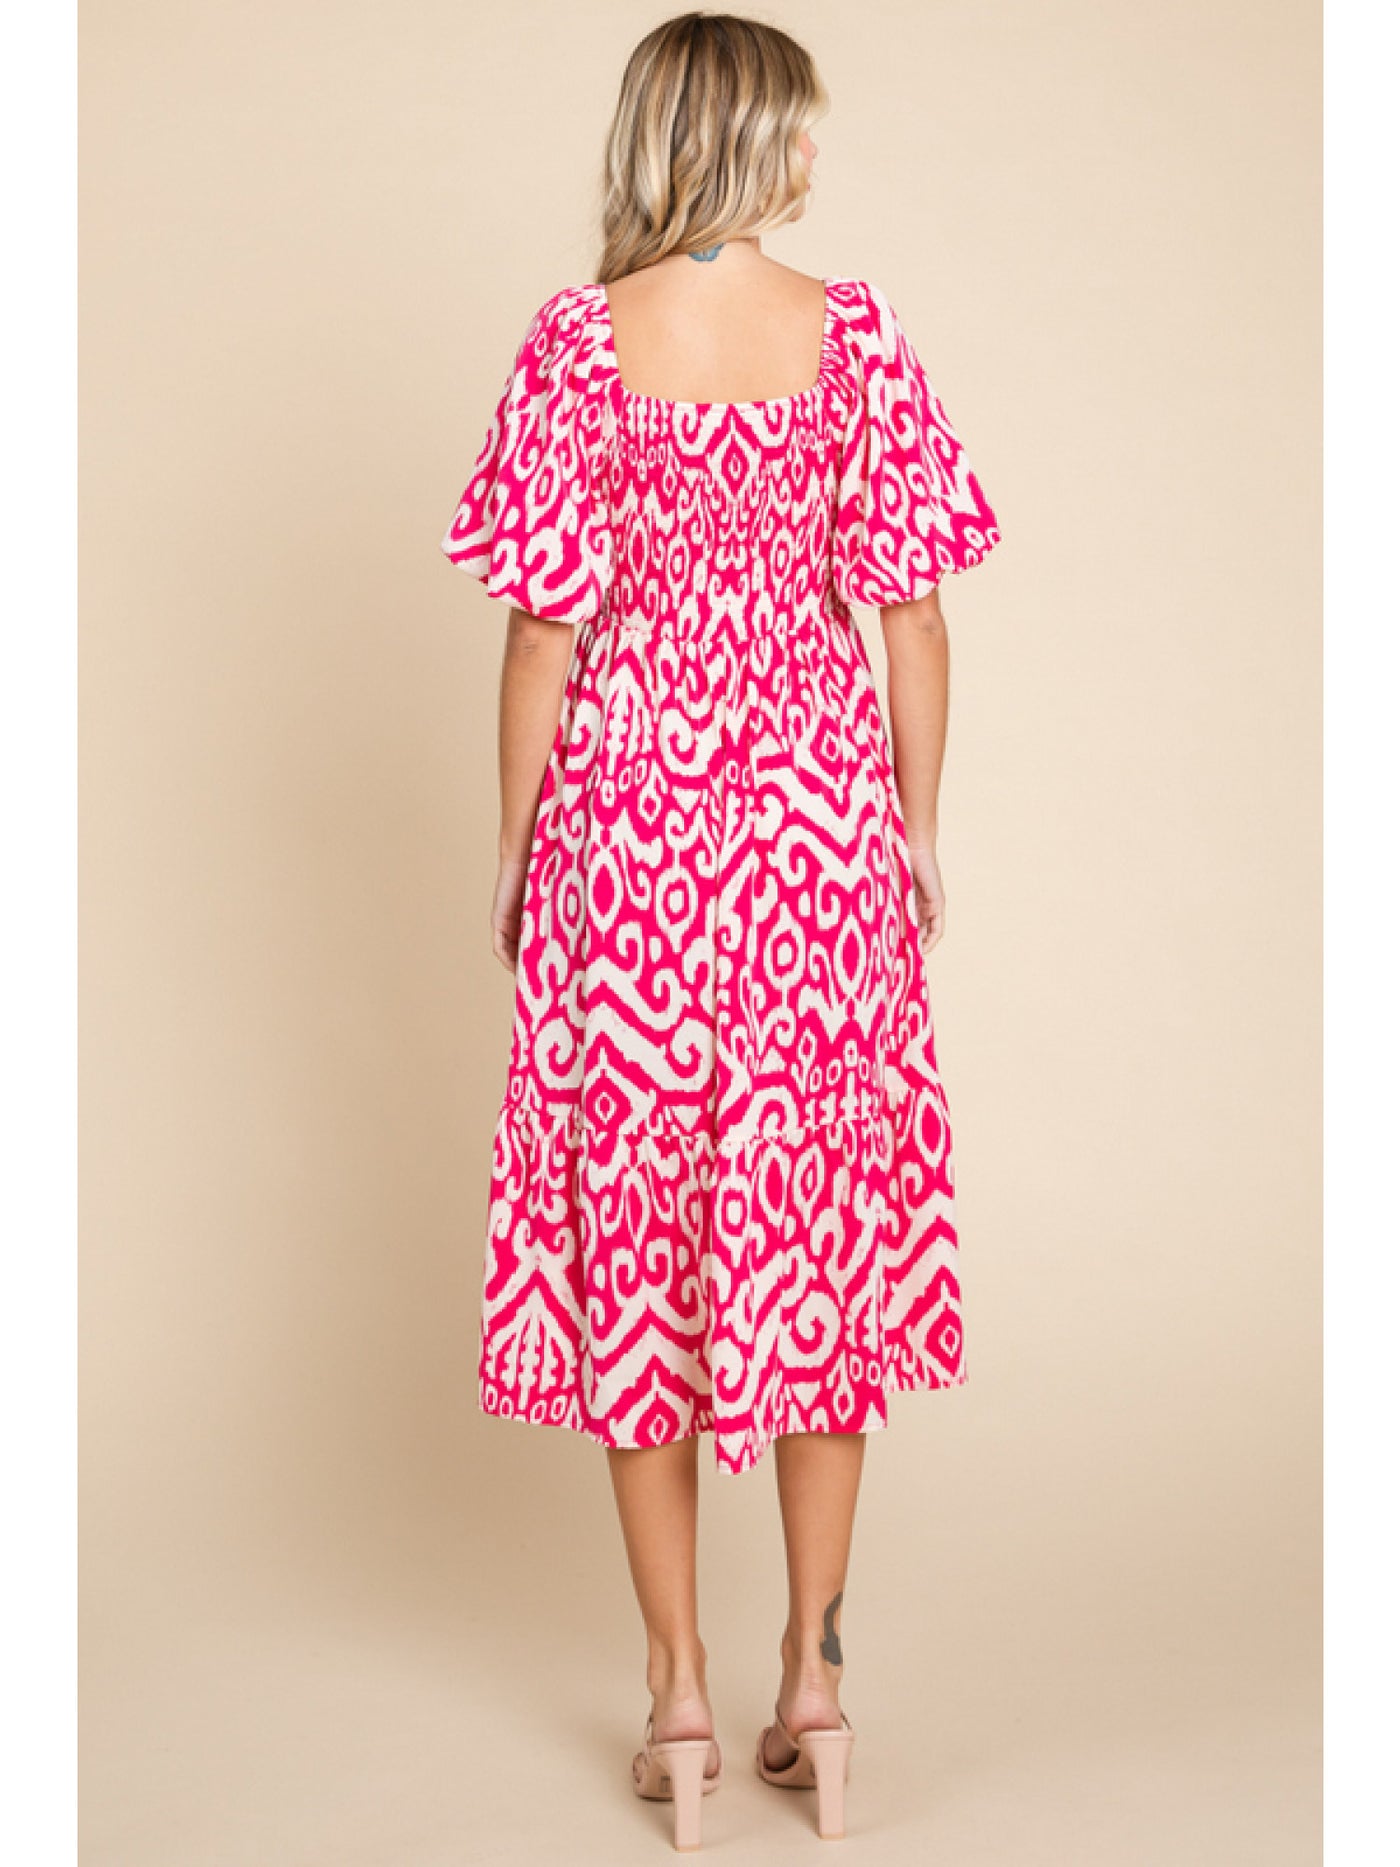 Curvy Hot Pink Geometric Midi Dress w/ Pockets